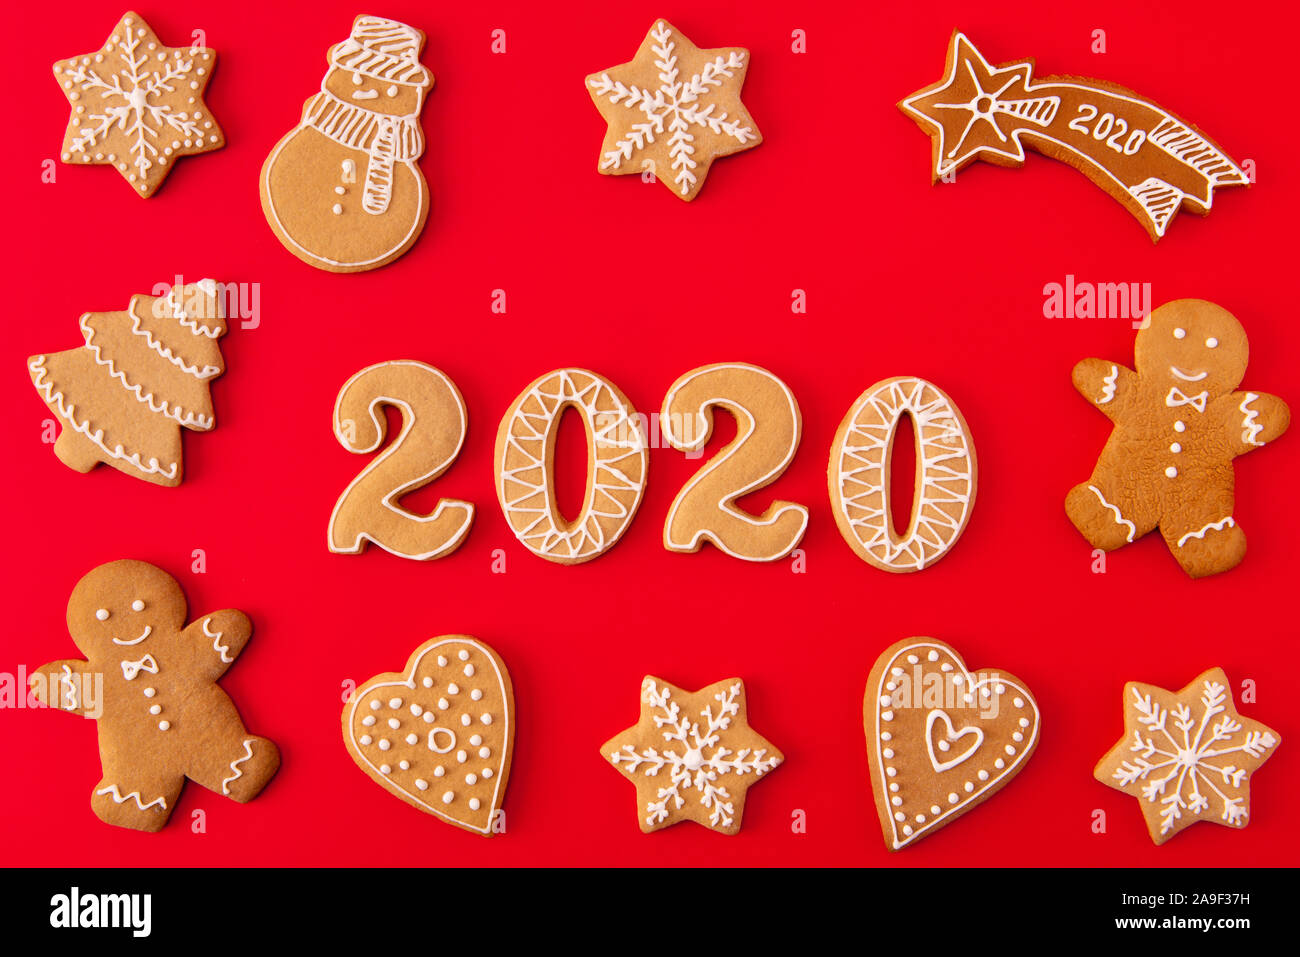 Oben über hohen Winkel anzeigen Foto der festlichen x-mas Zusammensetzung der Lebkuchen cookies Mann schneemann Baum Sterne fallen Herzen Briefe und 2020 liegen Stockfoto